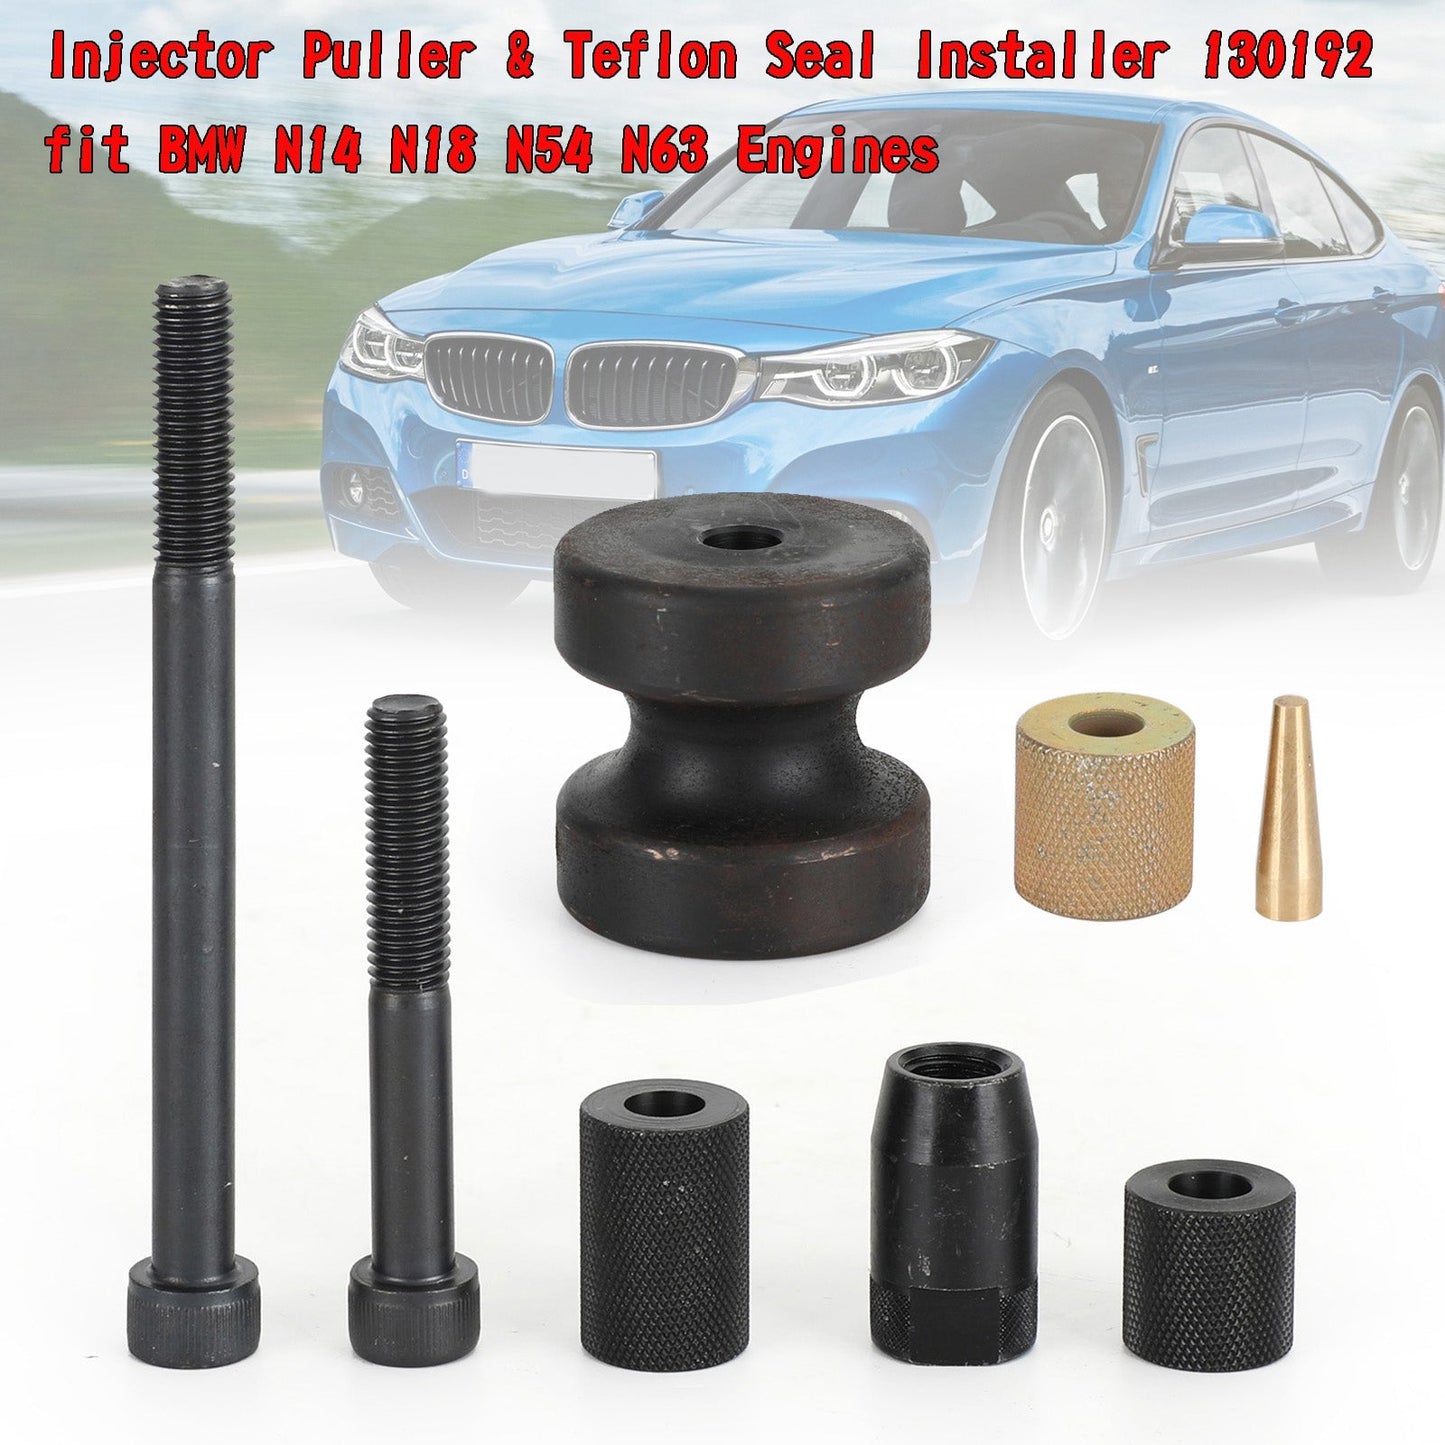 Injector Puller & Teflon Seal Installer 130192 Fit BMW N14 N18 N54 N63 Motoren Generisches